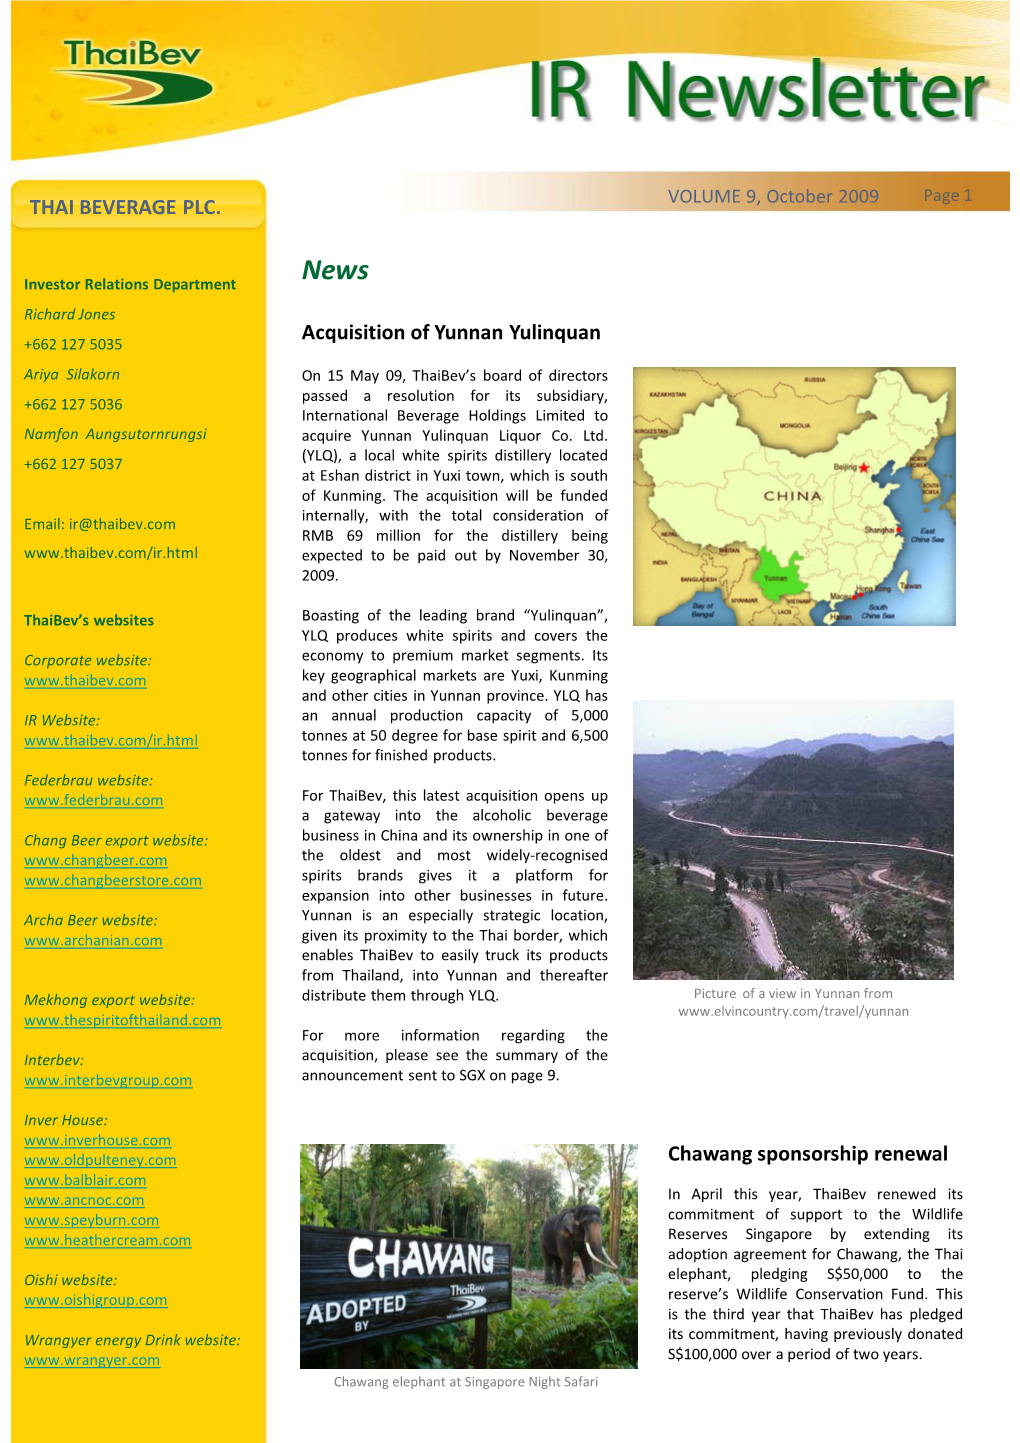 THAI BEVERAGE PLC. Acquisition of Yunnan Yulinquan Chawang